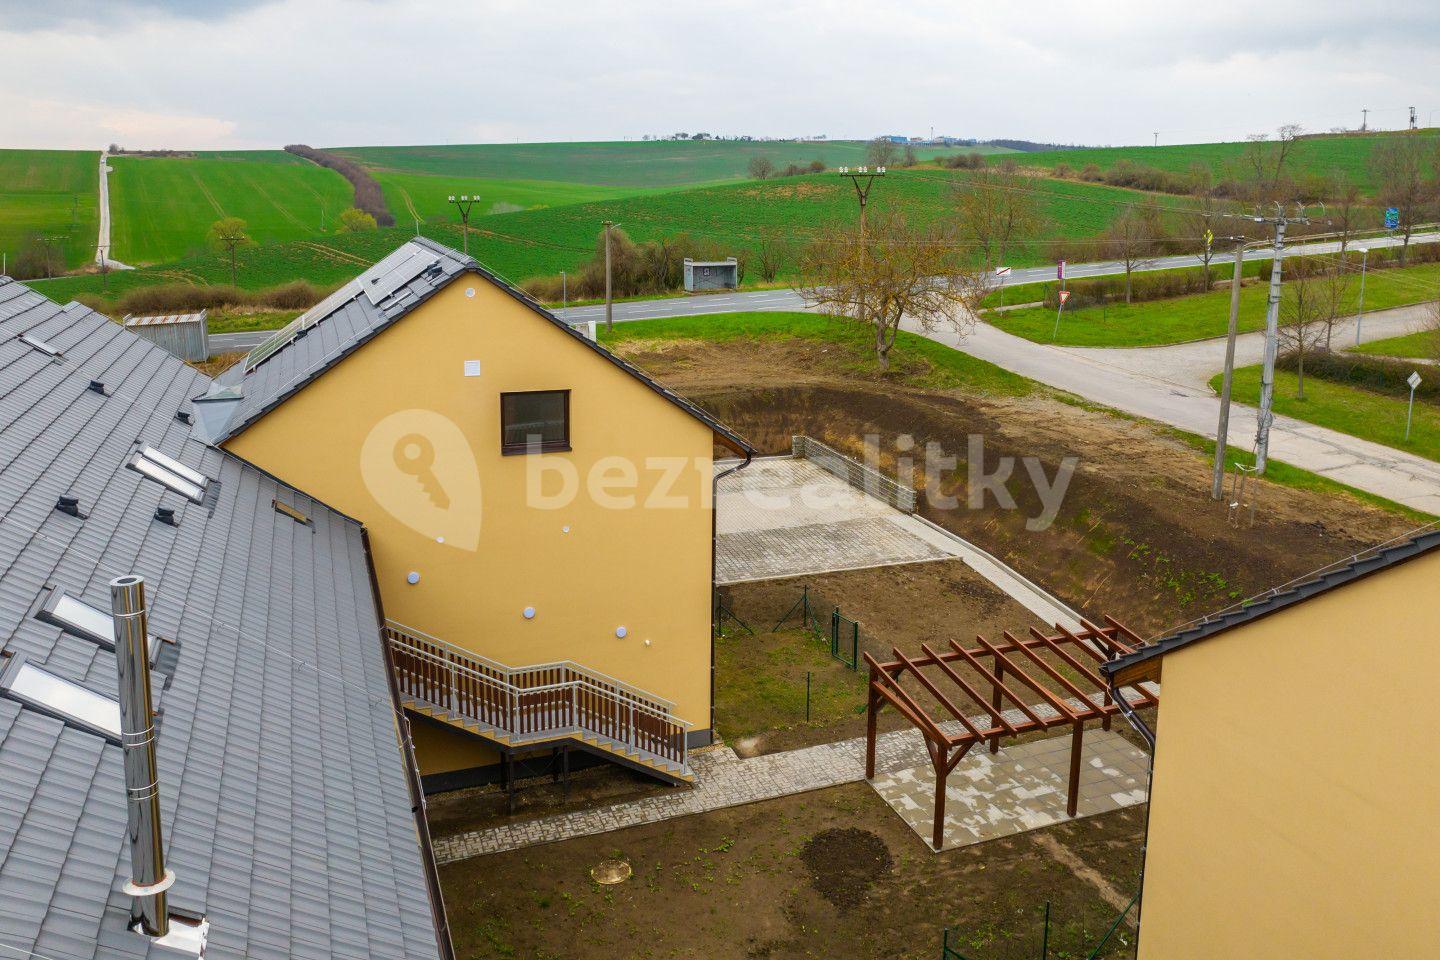 1 bedroom with open-plan kitchen flat for sale, 84 m², Žarošice, Jihomoravský Region